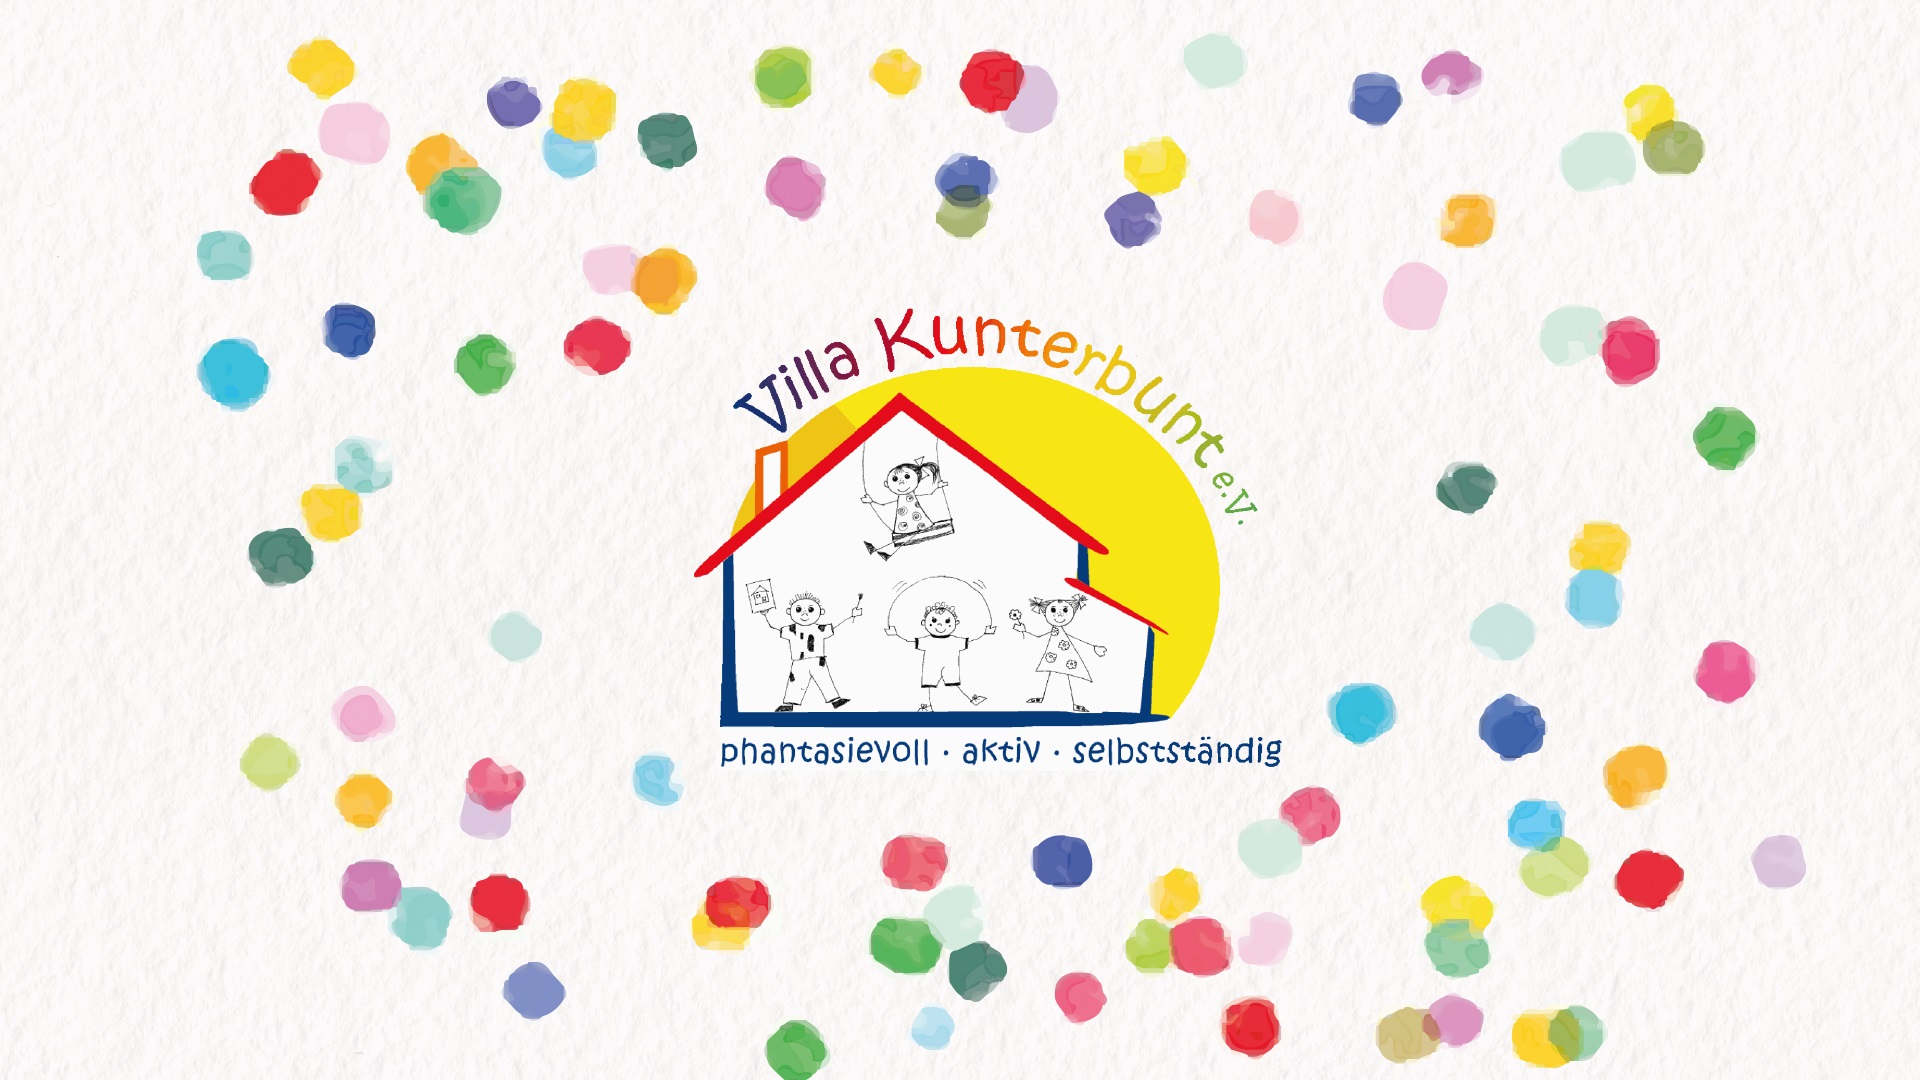 Eine Zeichnung von spielenden Kindern in einem Haus. Darüber steht in bunten Buchstaben Villa Kunterbunt e.V.